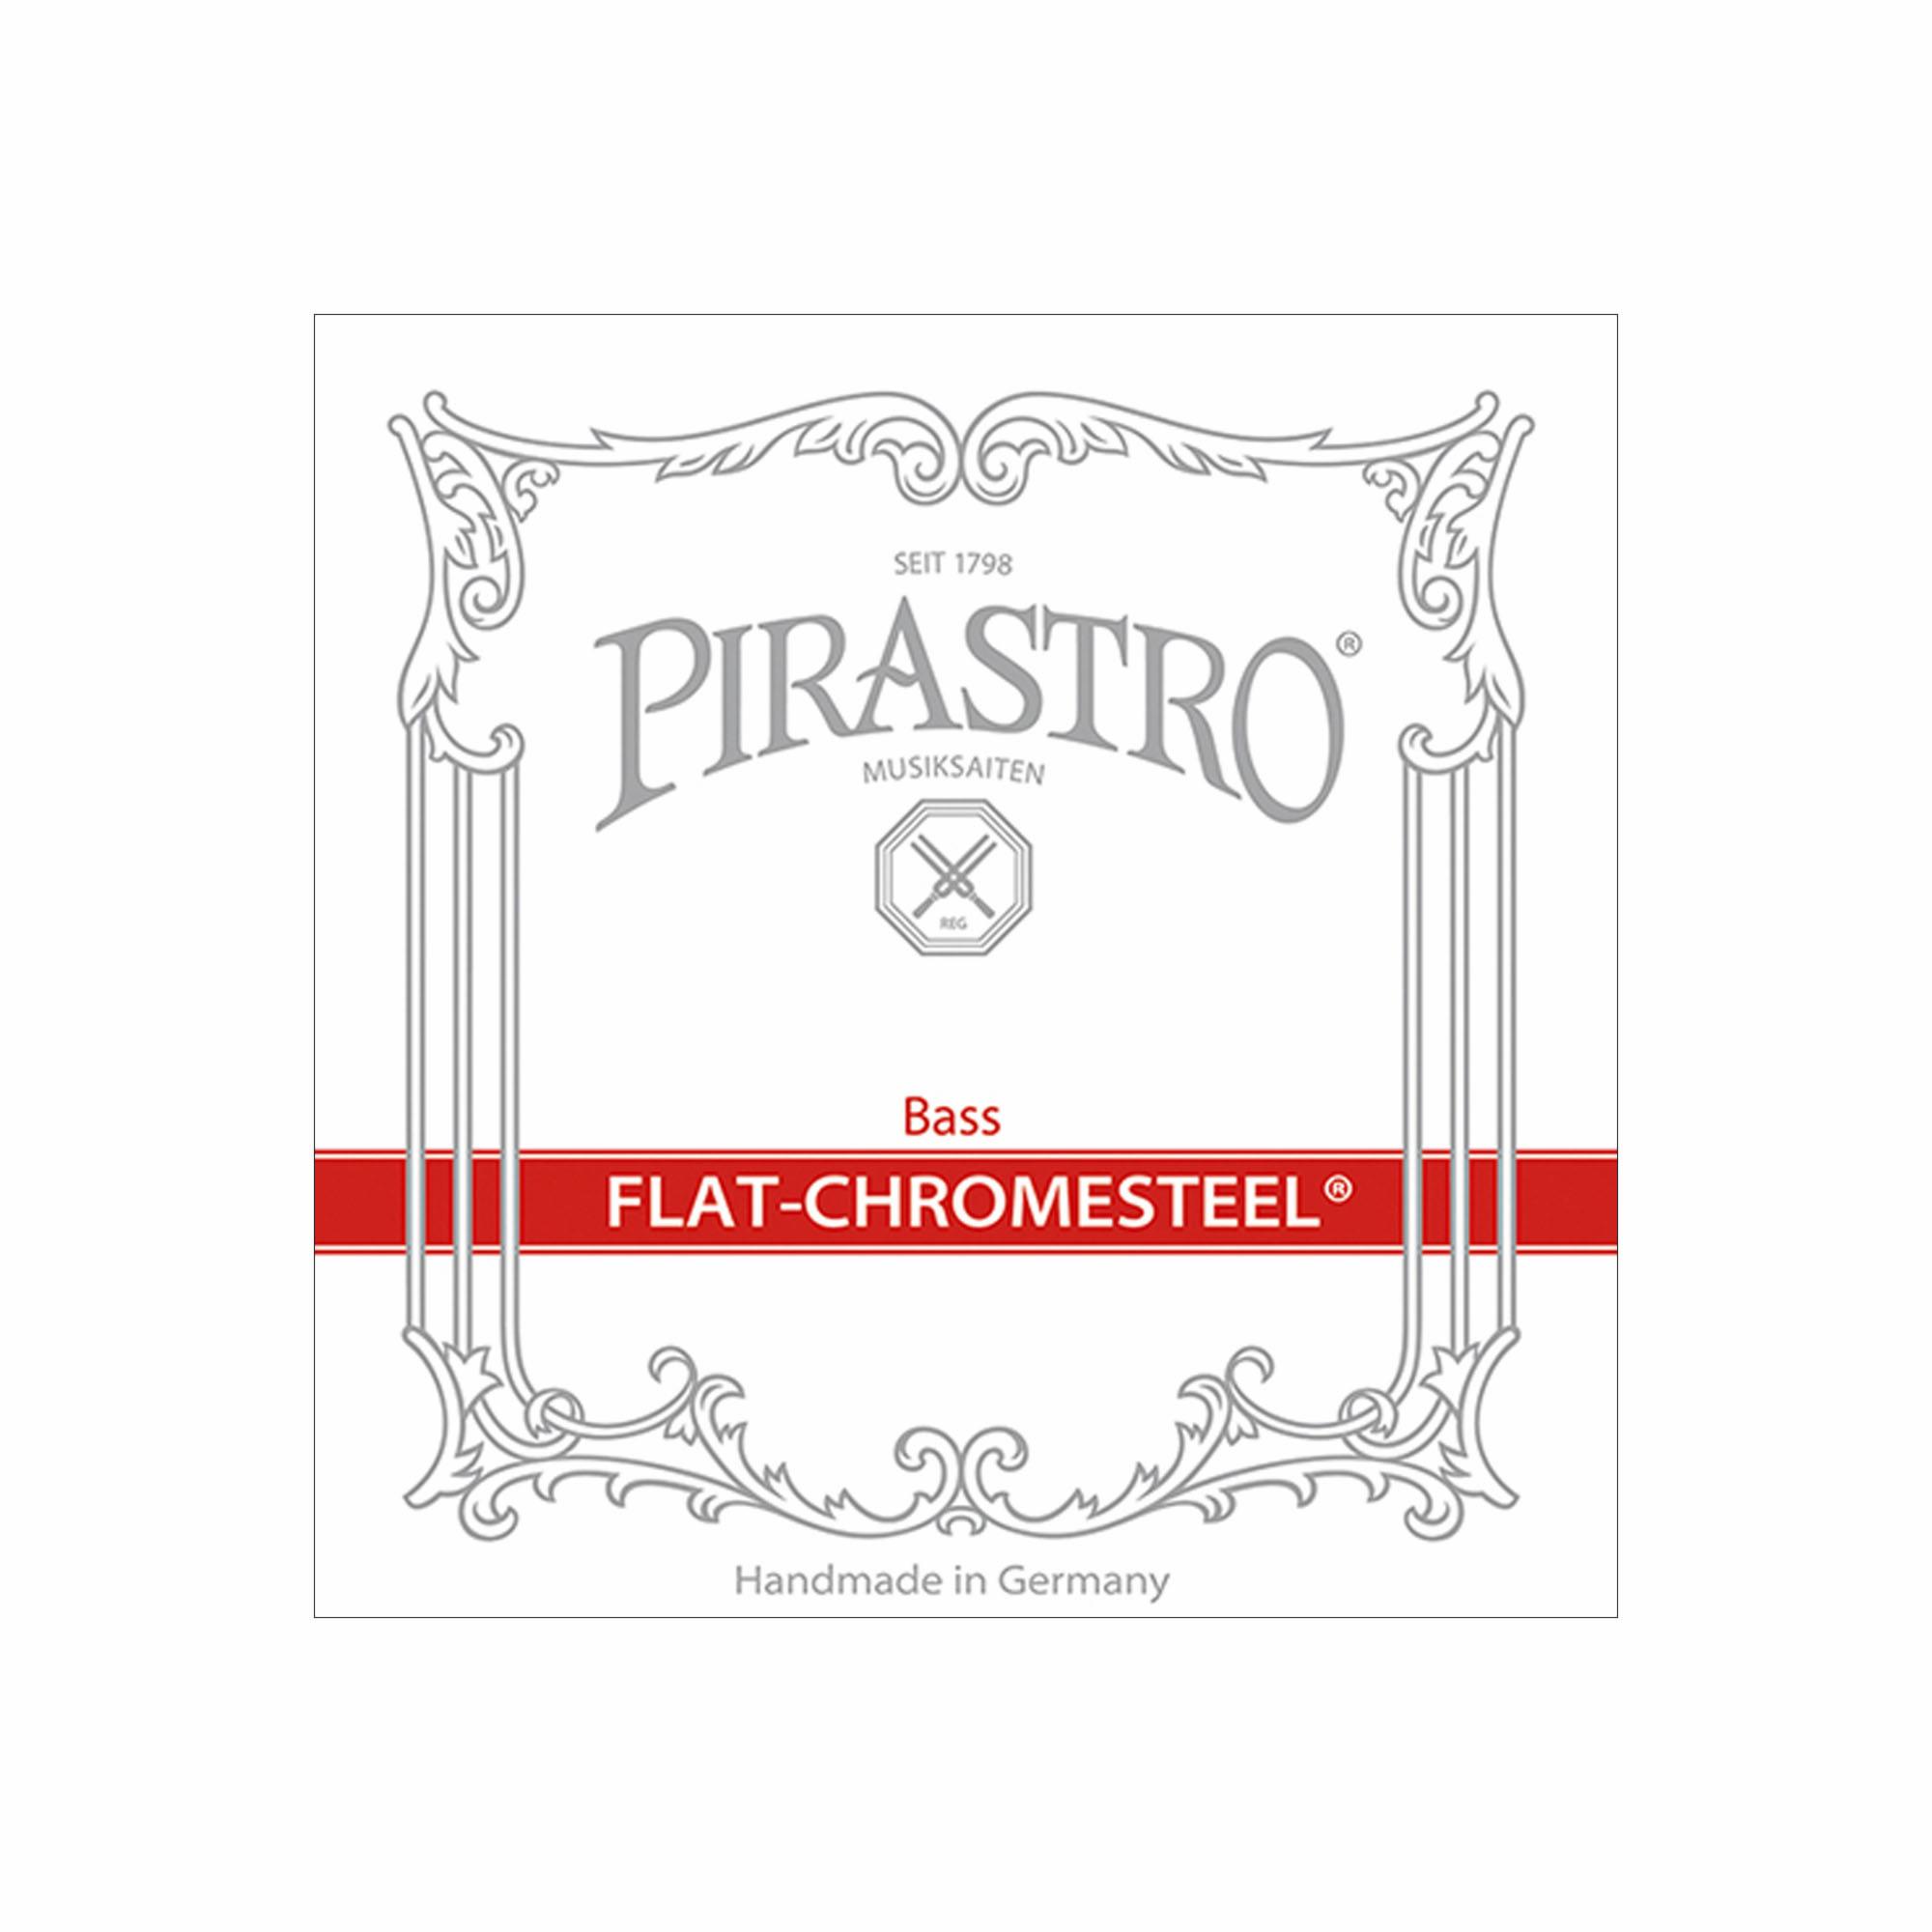 Pirastro Flat-Chromesteel Bass Strings